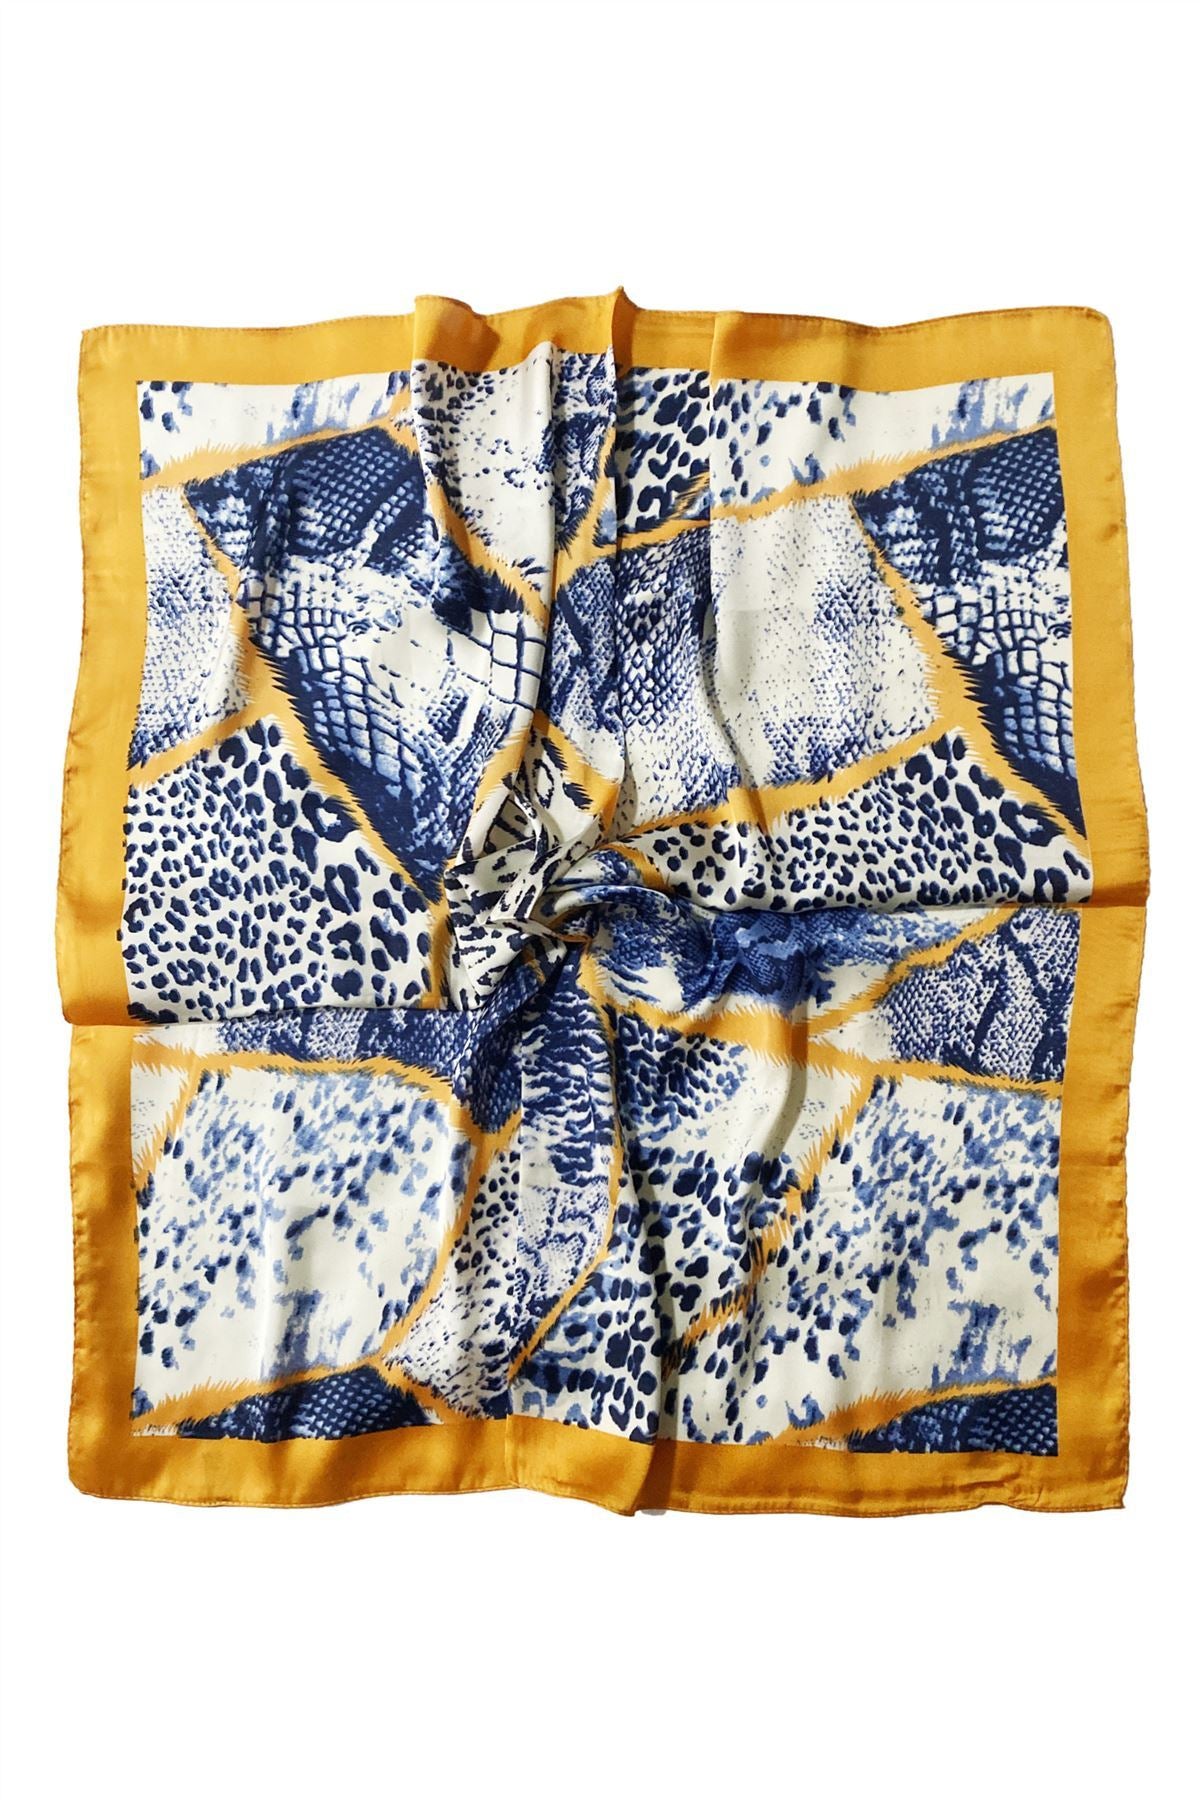 Šála-šátek s Hadím a Leopardím vzorem, modrá a oranžová, 70 cm x 70 cm